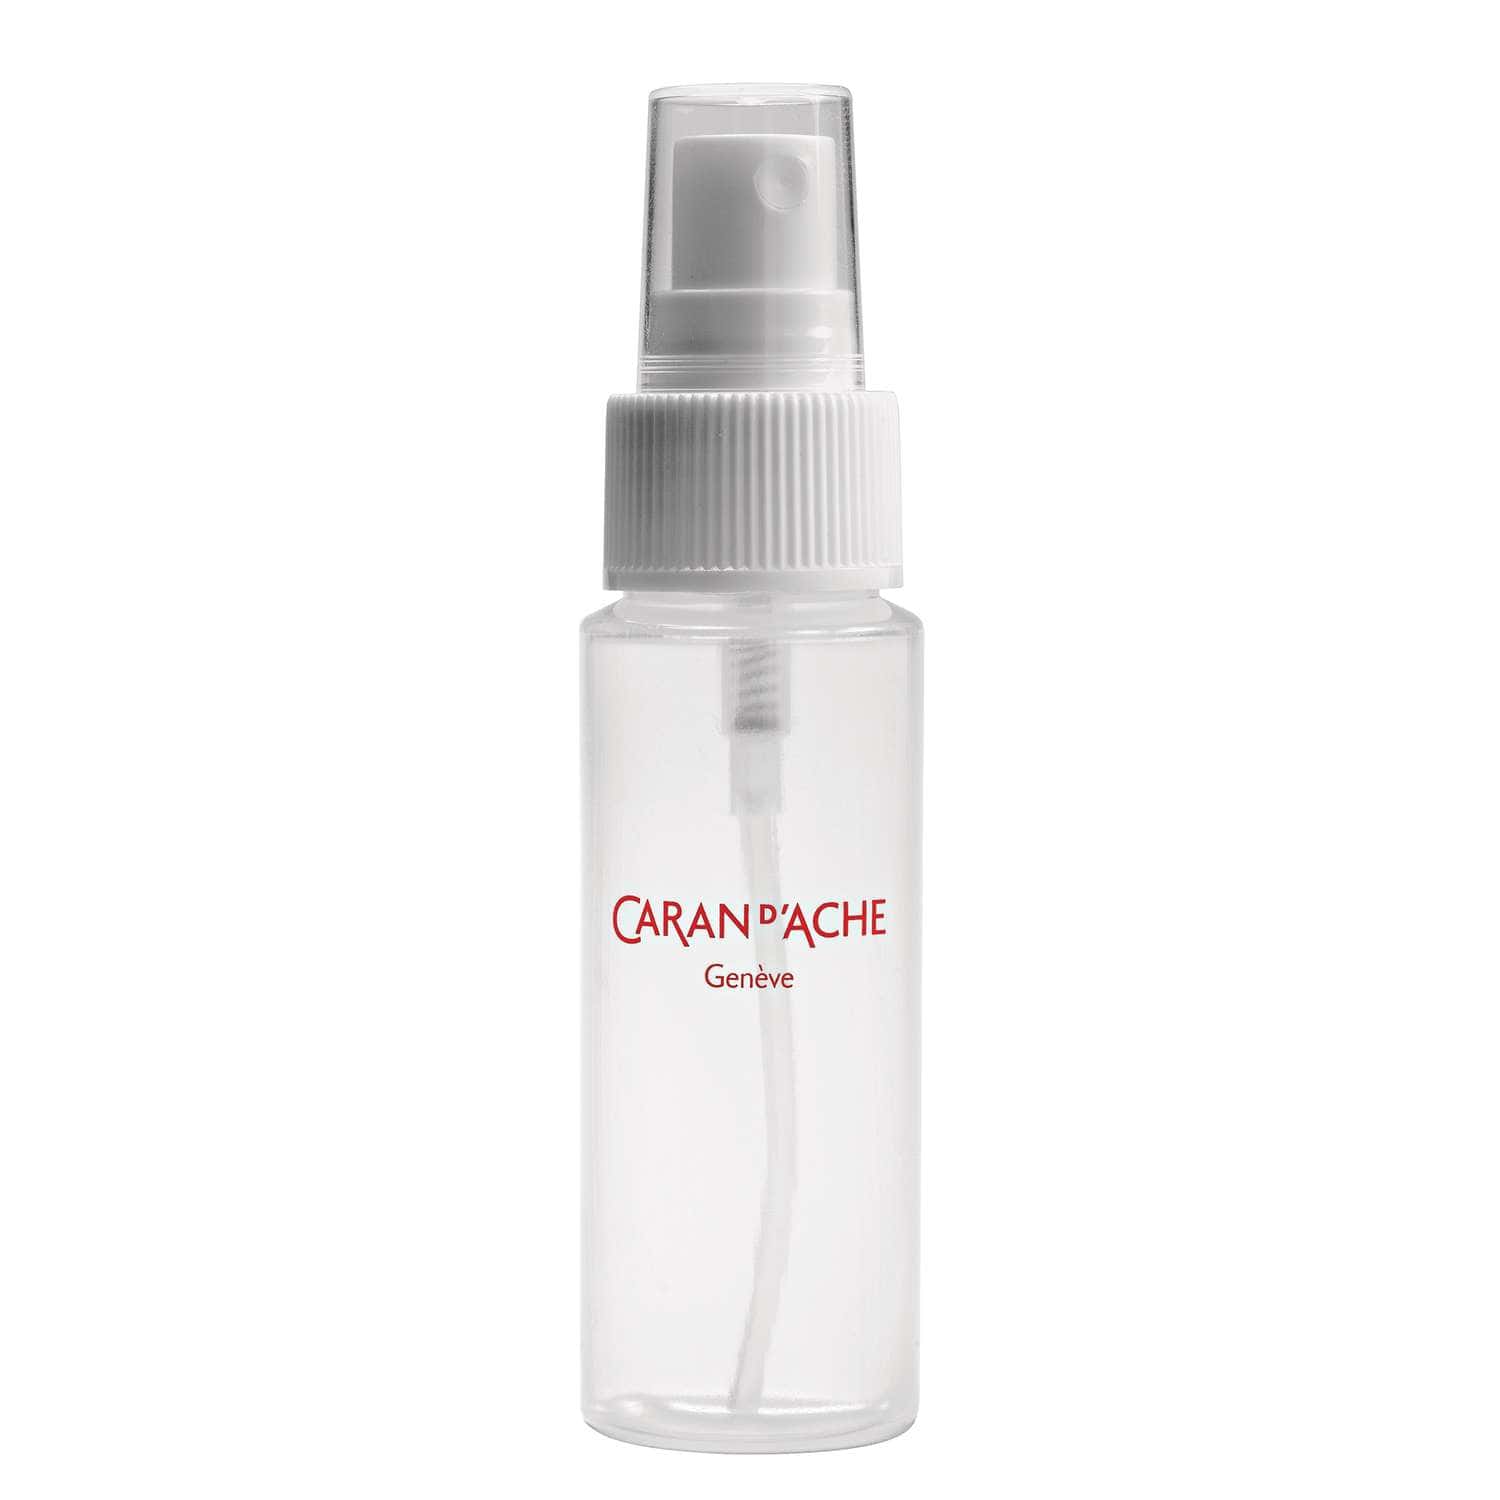 Immagini Stock - Flacone Spray In Plastica Vuoto Isolato Su Bianco. Image  174200709